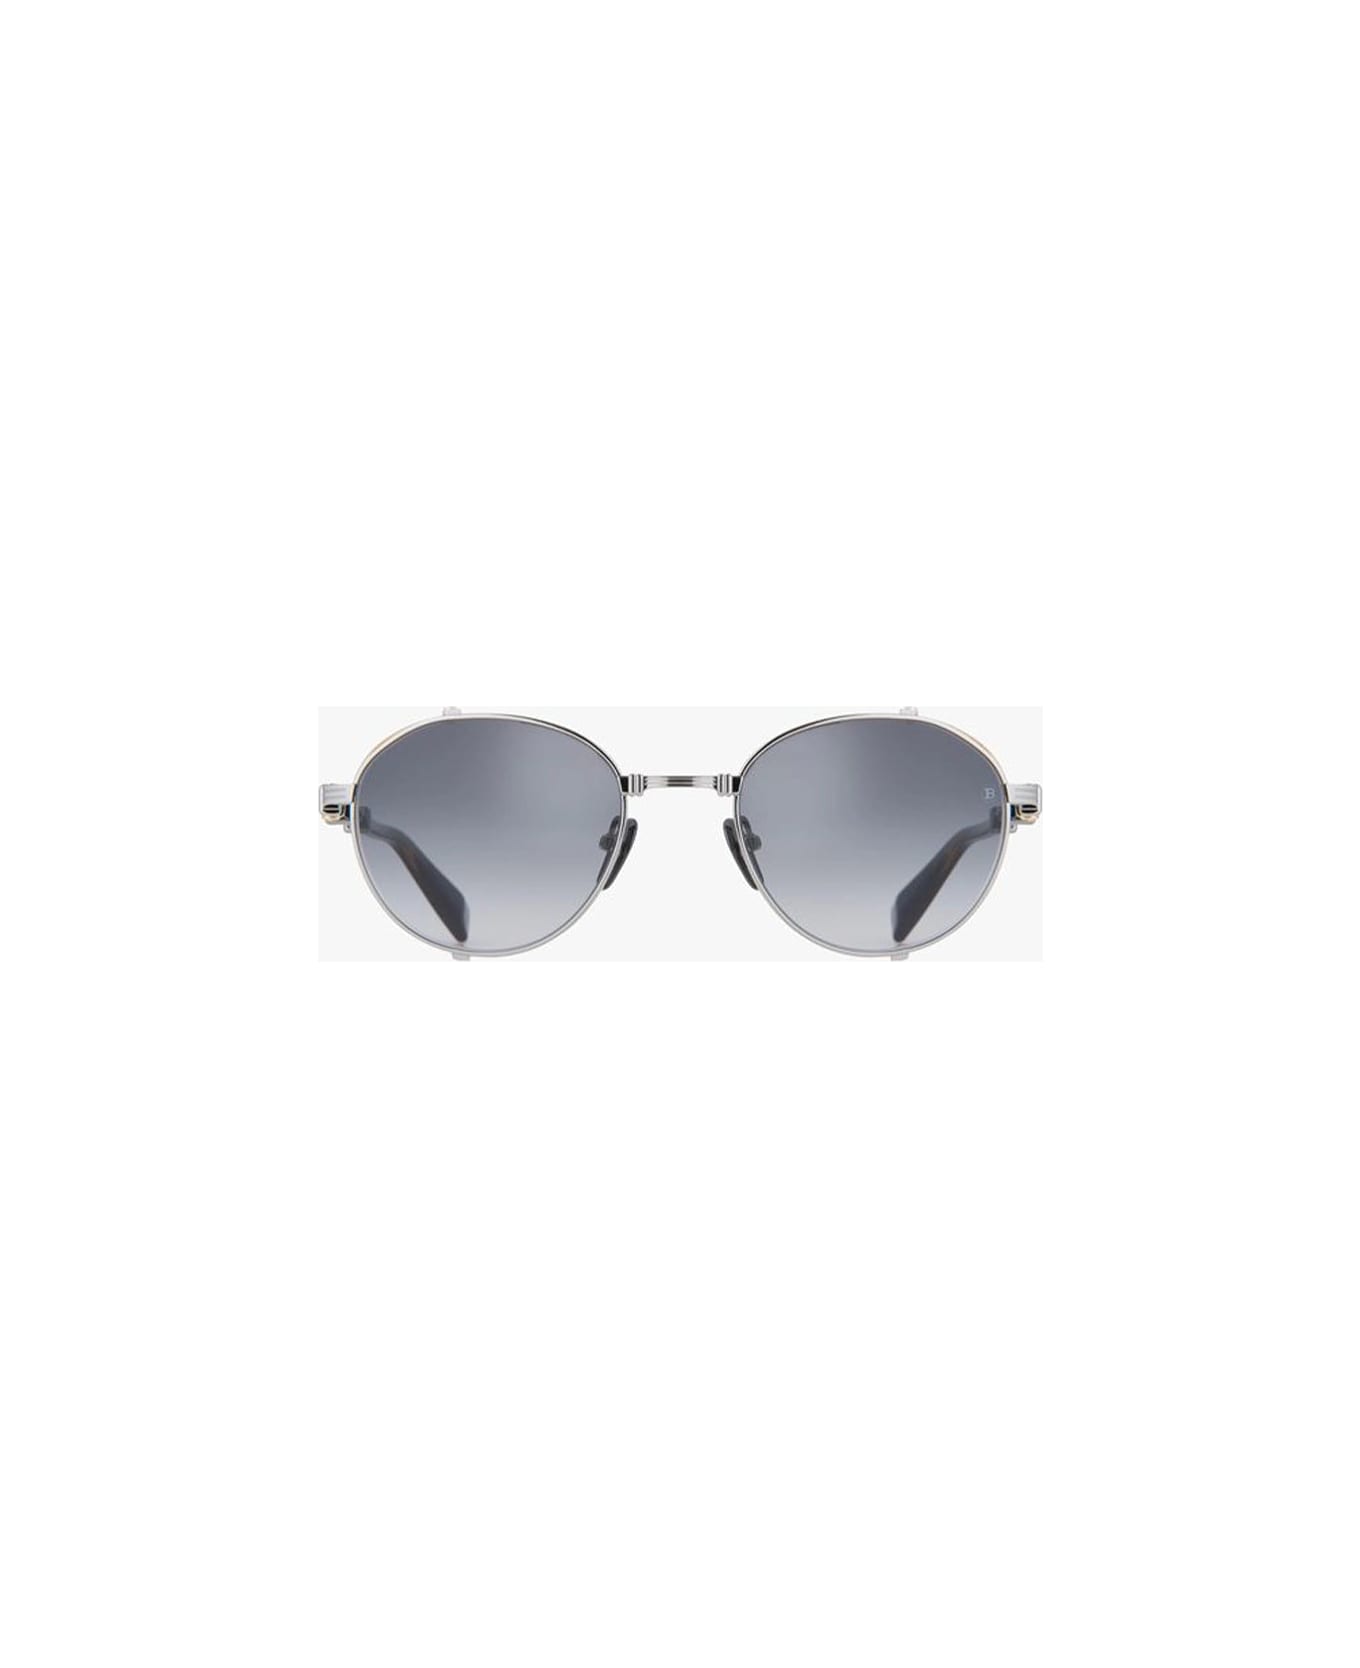 Balmain Brigade-i - Tortoise GG1067S Sunglasses Sunglasses - silver, tortoise